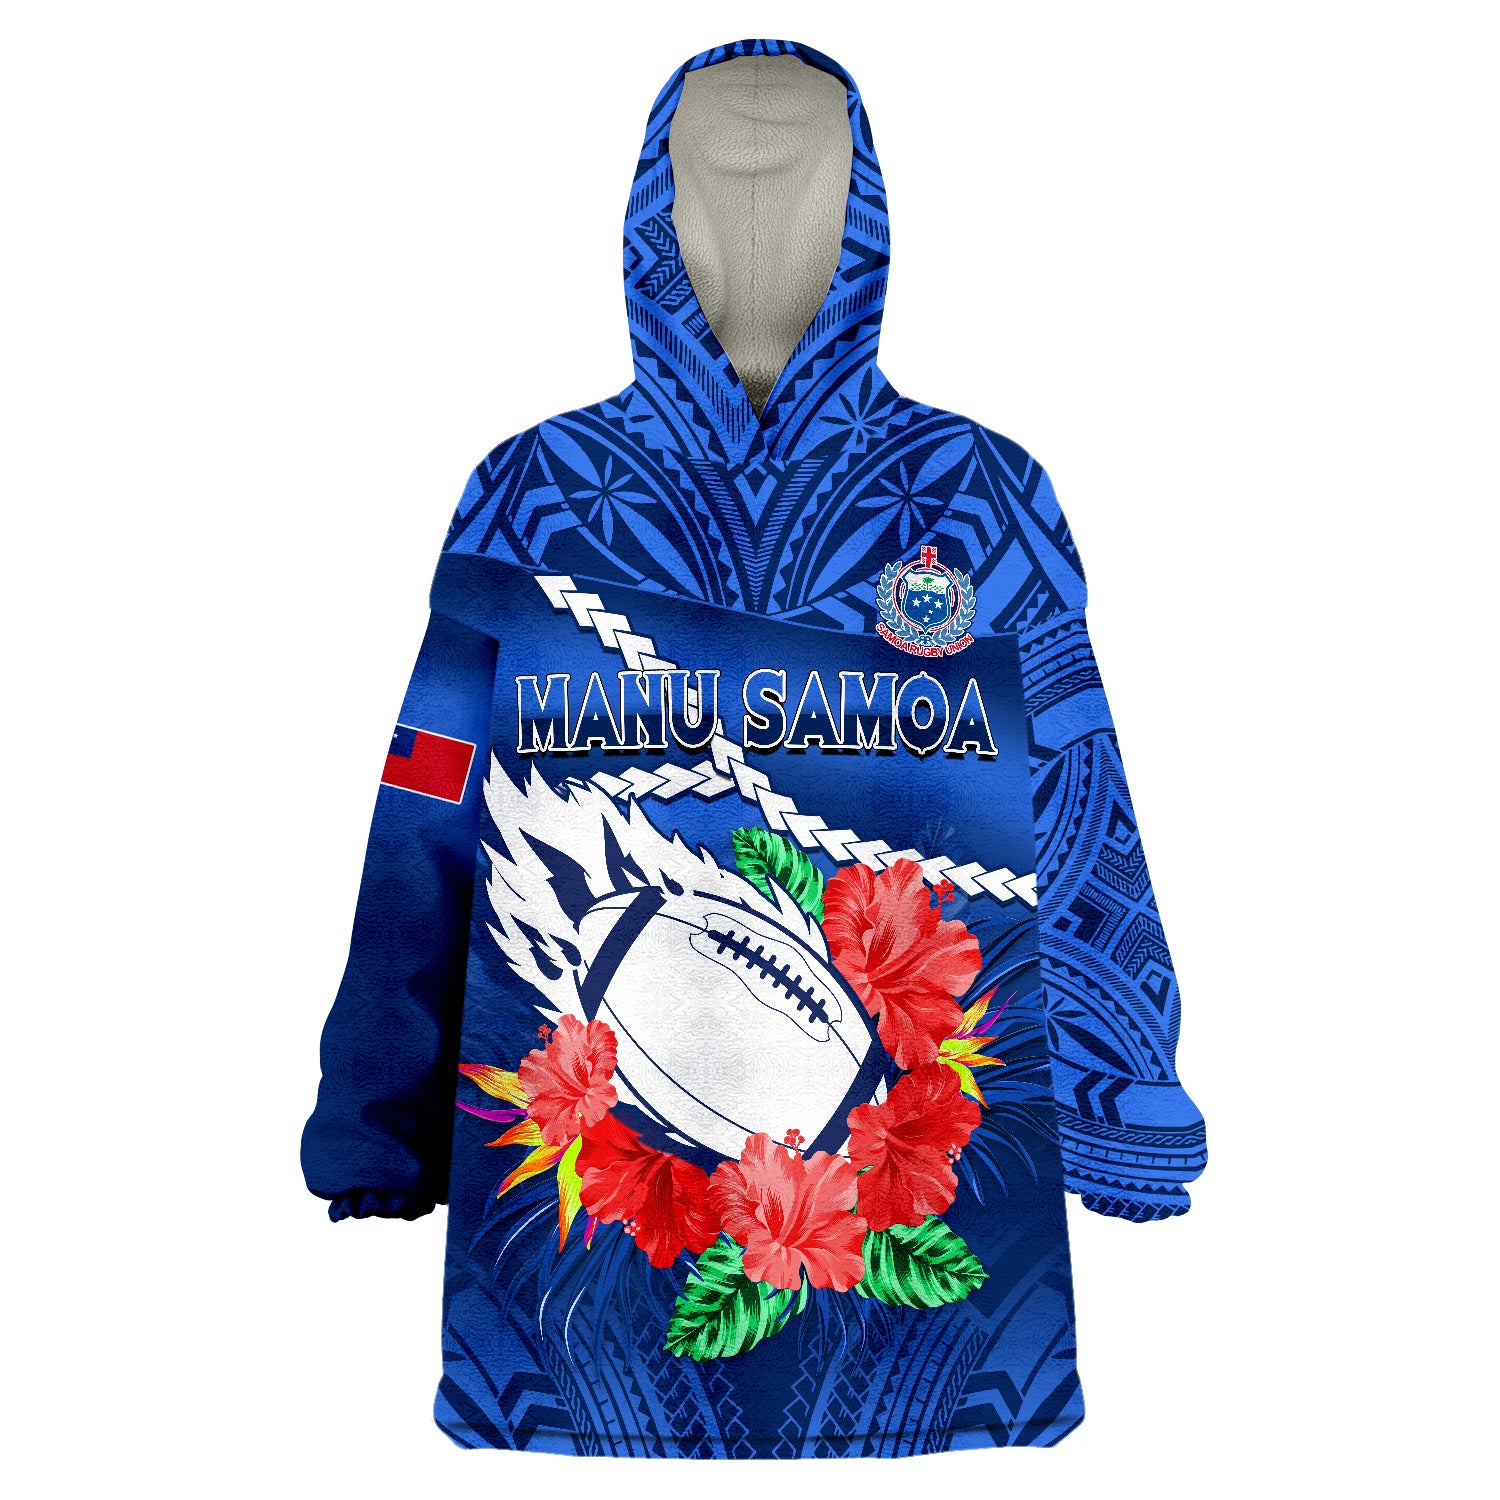 samoa-rugby-manu-samoa-polynesian-hibiscus-blue-style-wearable-blanket-hoodie